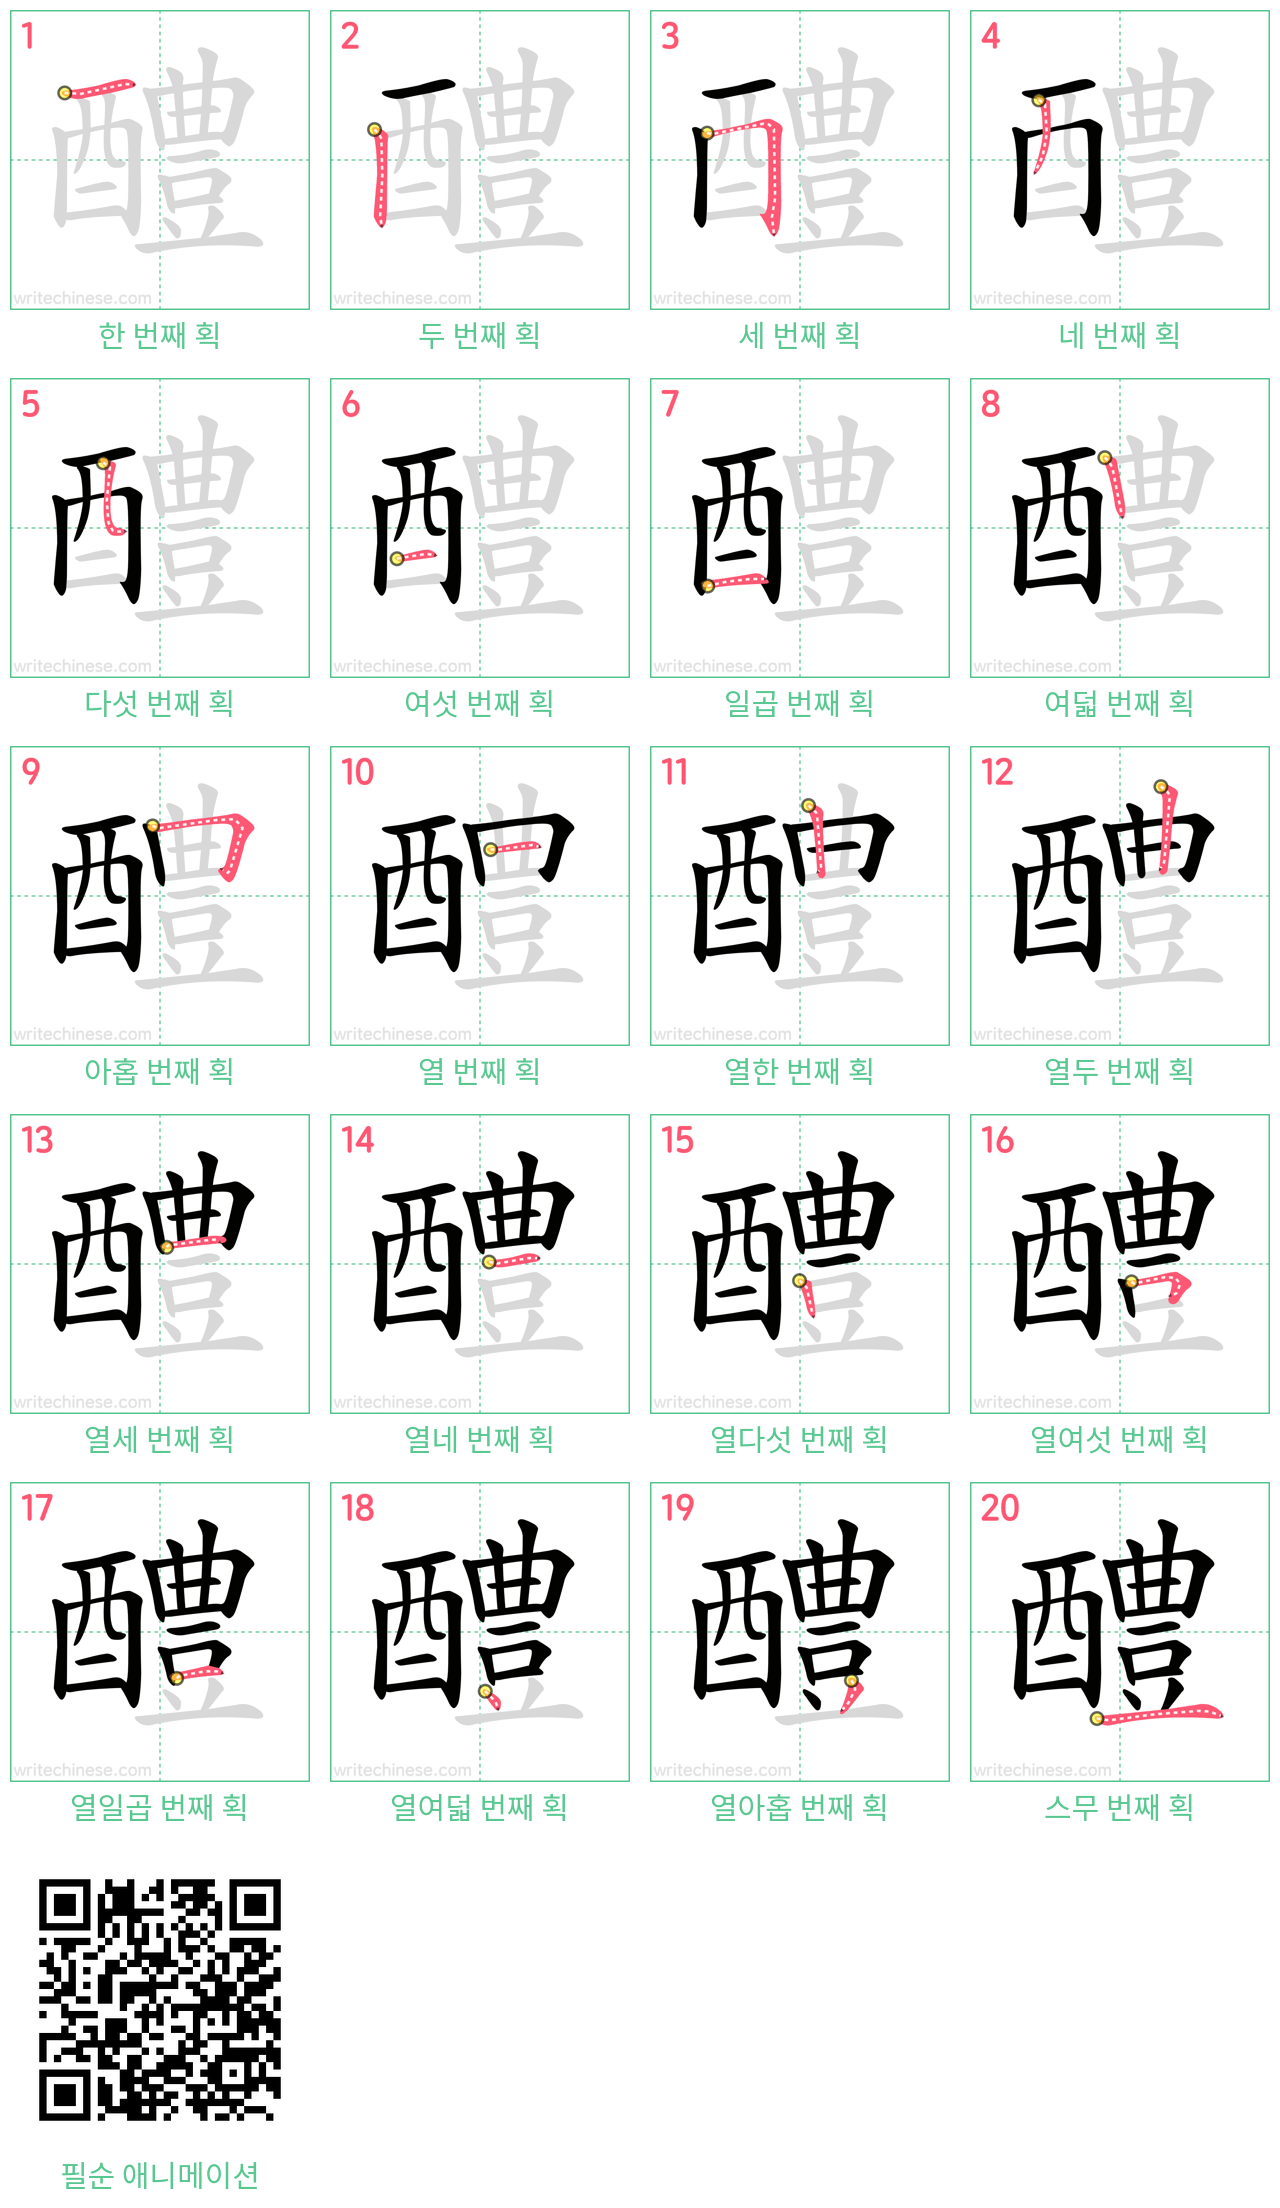 醴 step-by-step stroke order diagrams